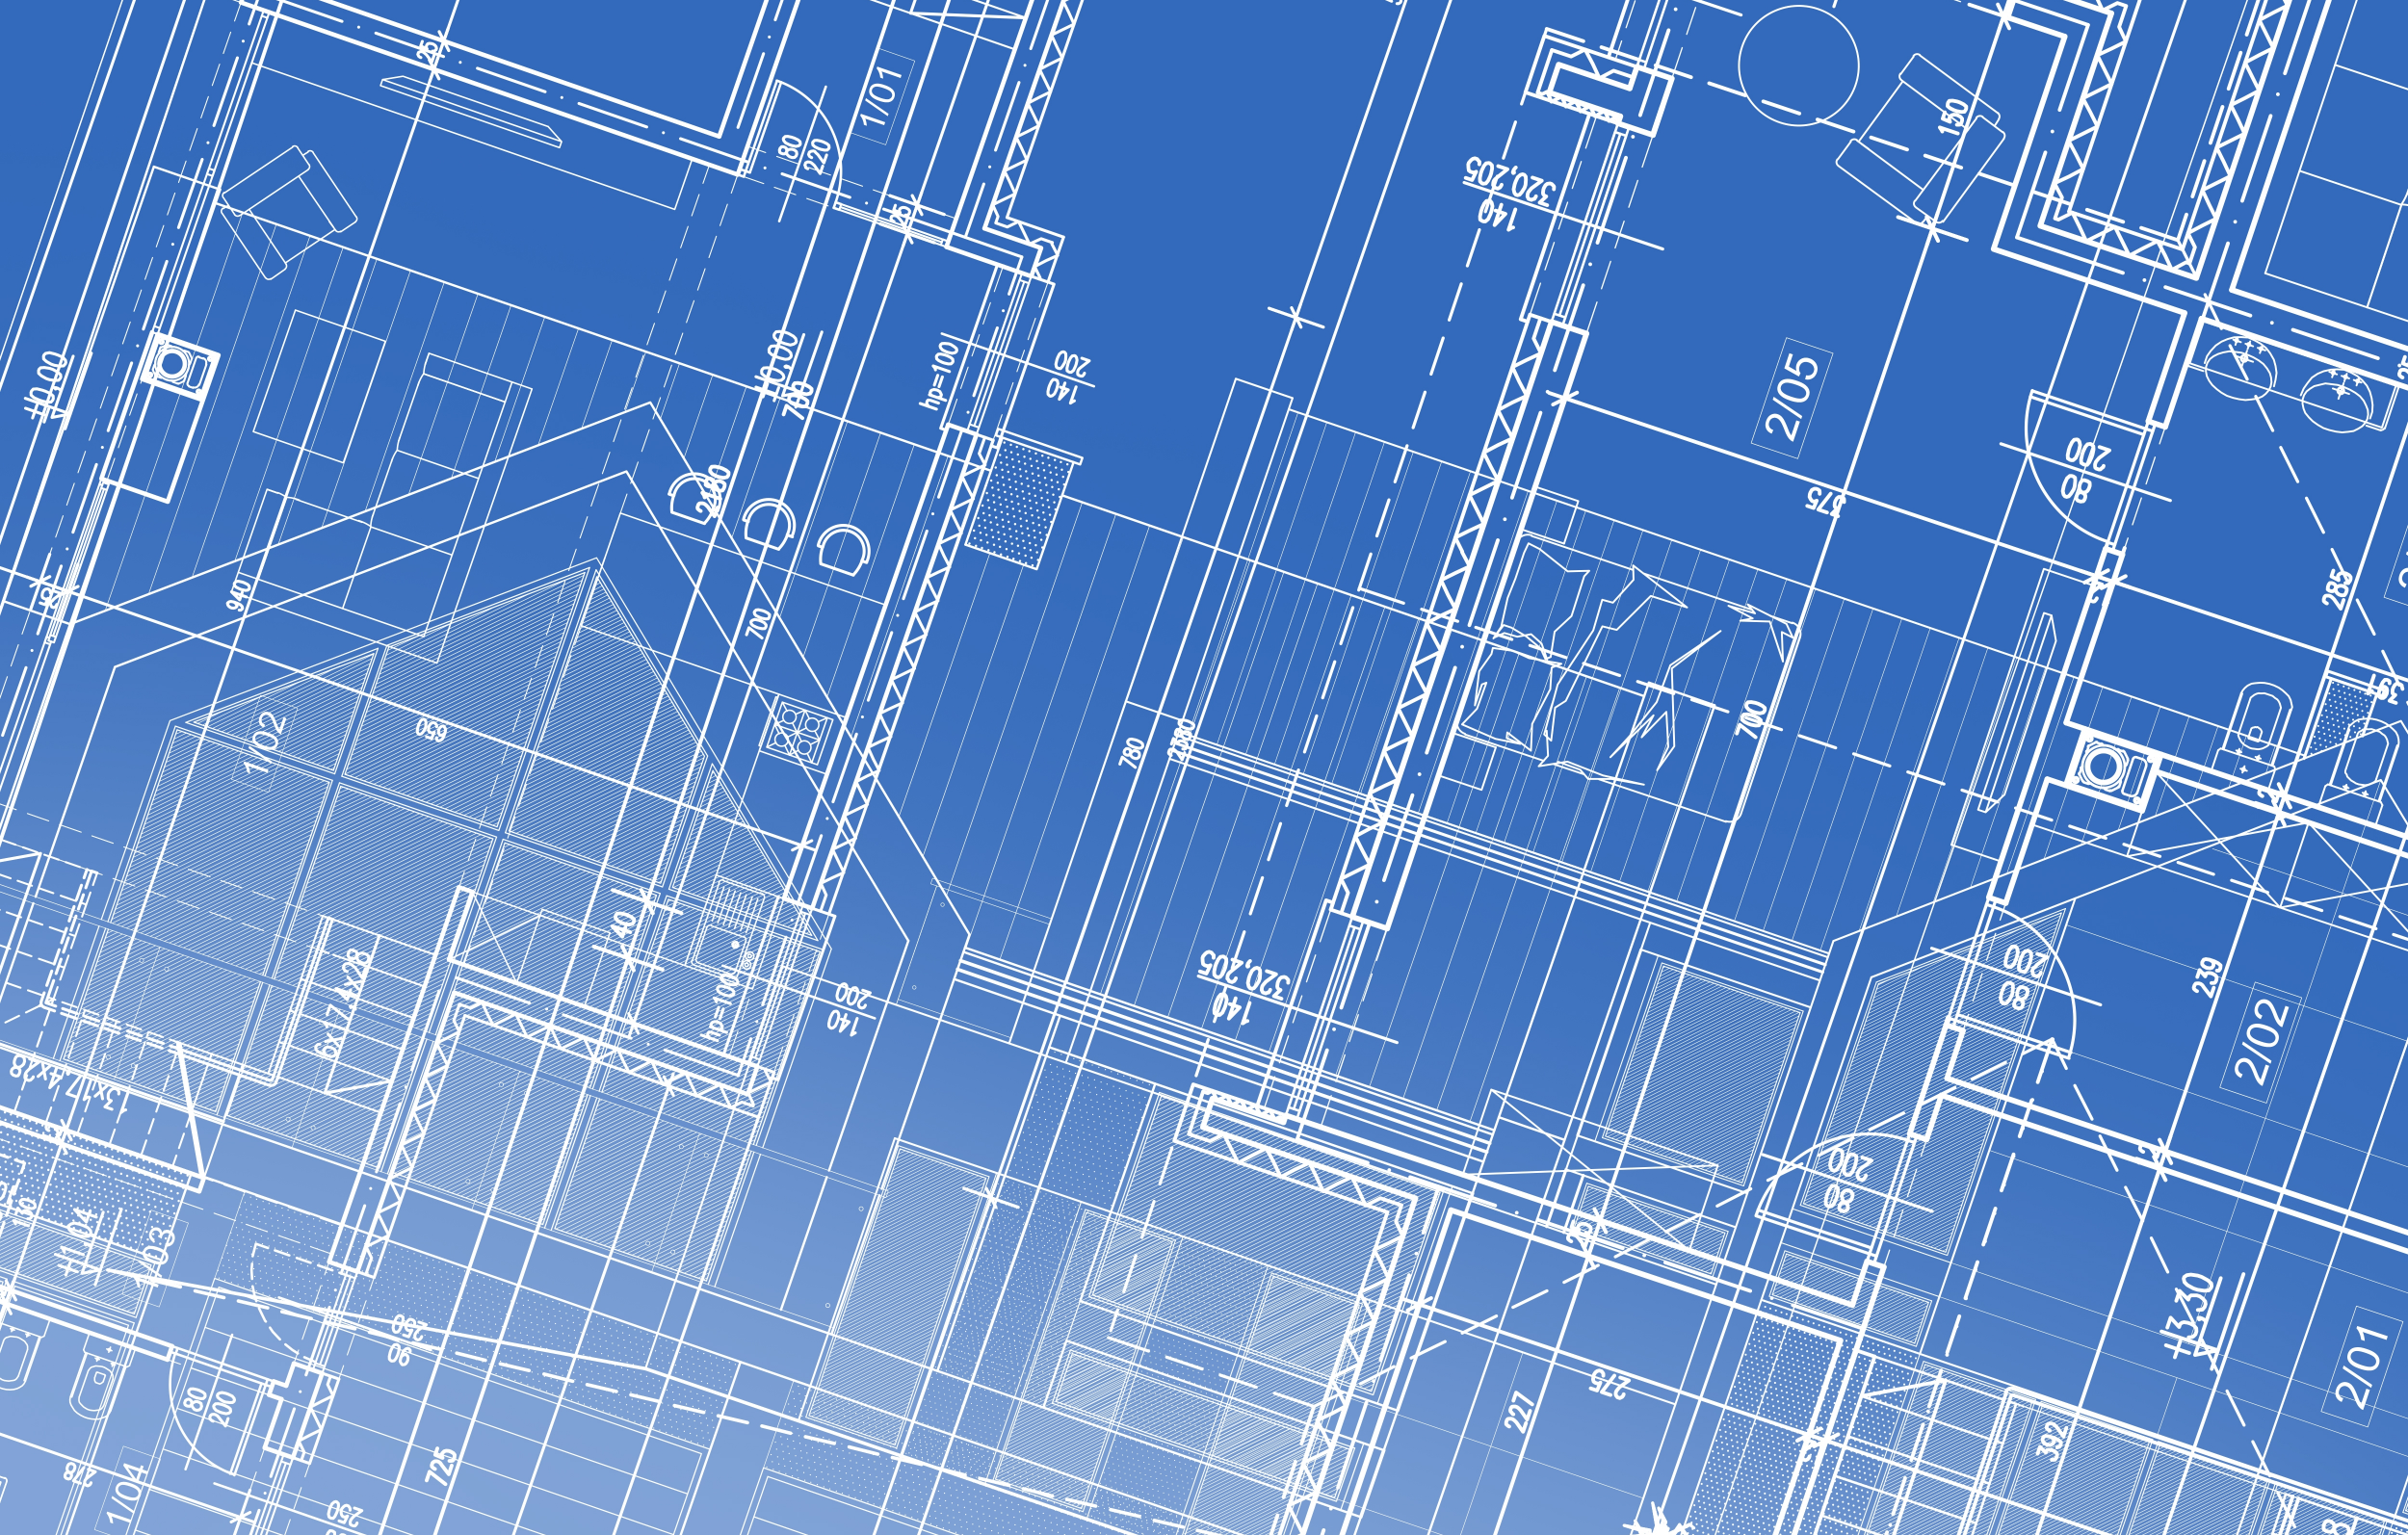 Blueprints for a building construction project.